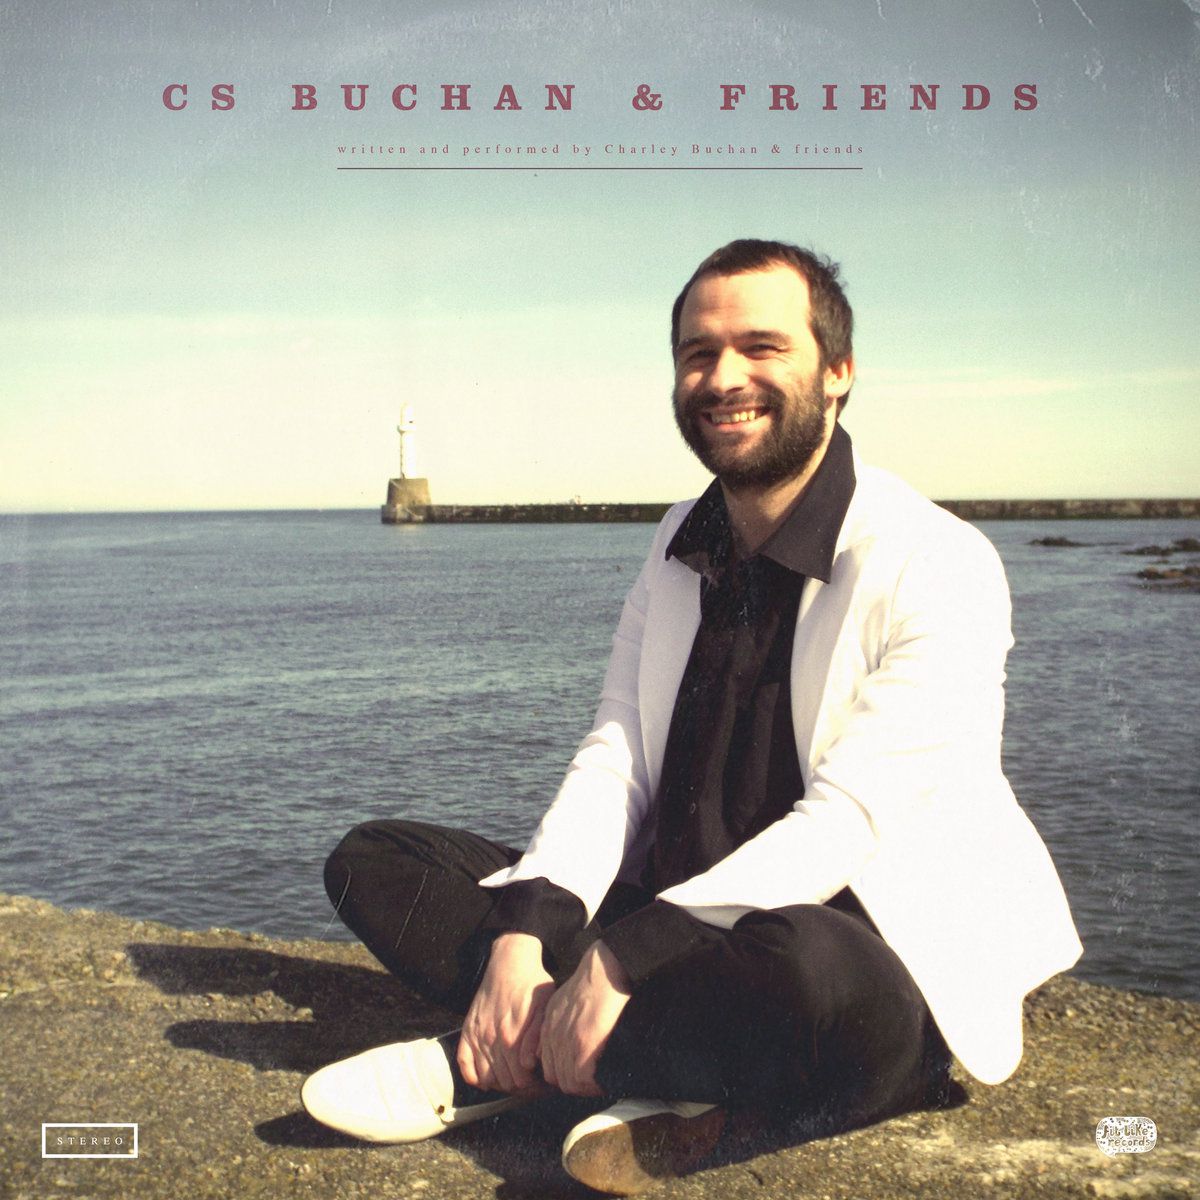 CS Buchan & Friends